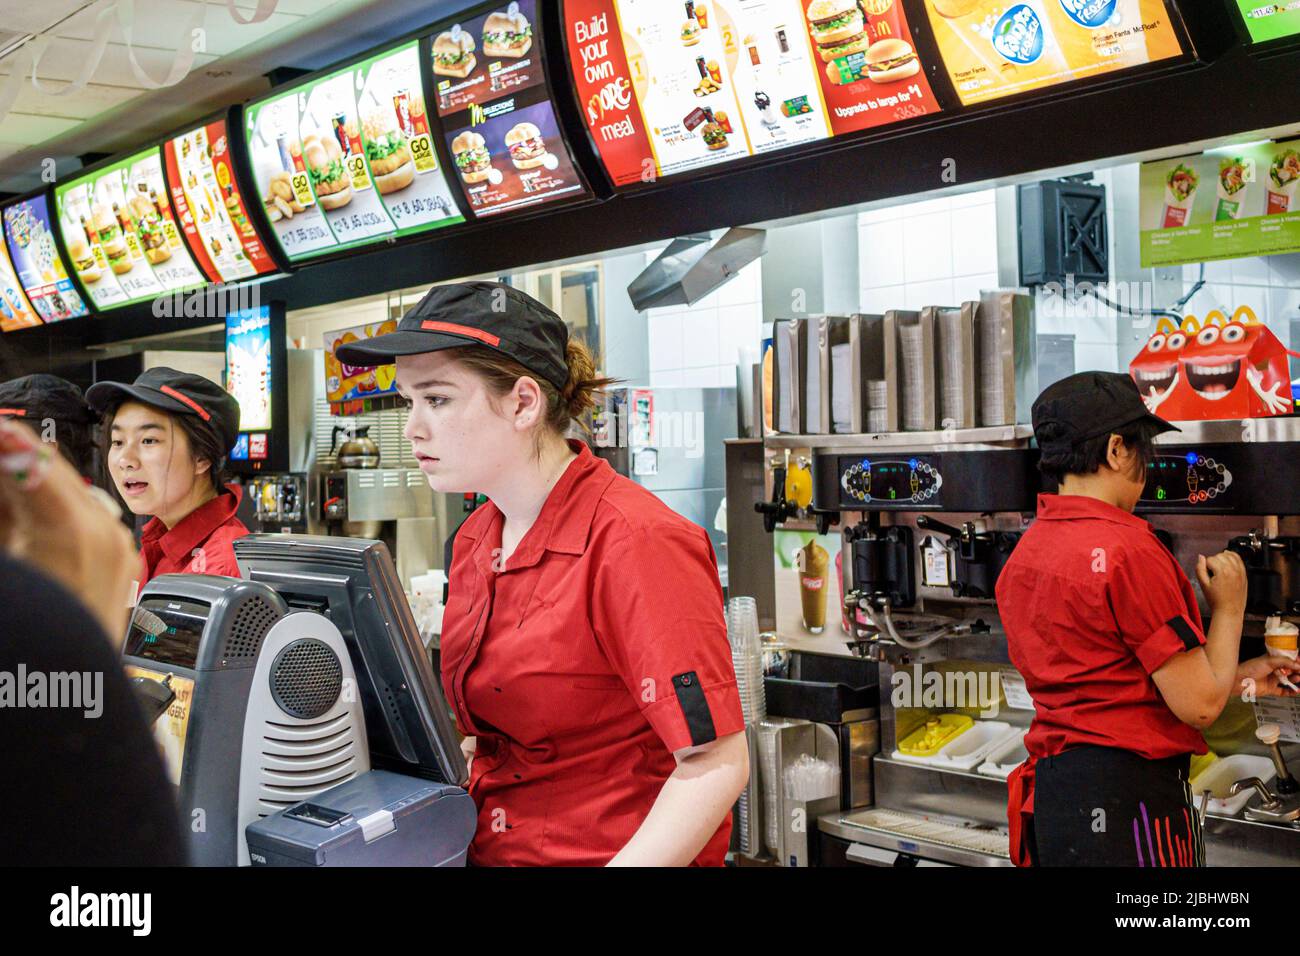 Melbourne Australie, Swanston Street, McDonald's fast-food restaurant comptoir adolescents, adolescents adolescentes femmes filles ouvriers travaillant uniforme prenant des commandes Banque D'Images